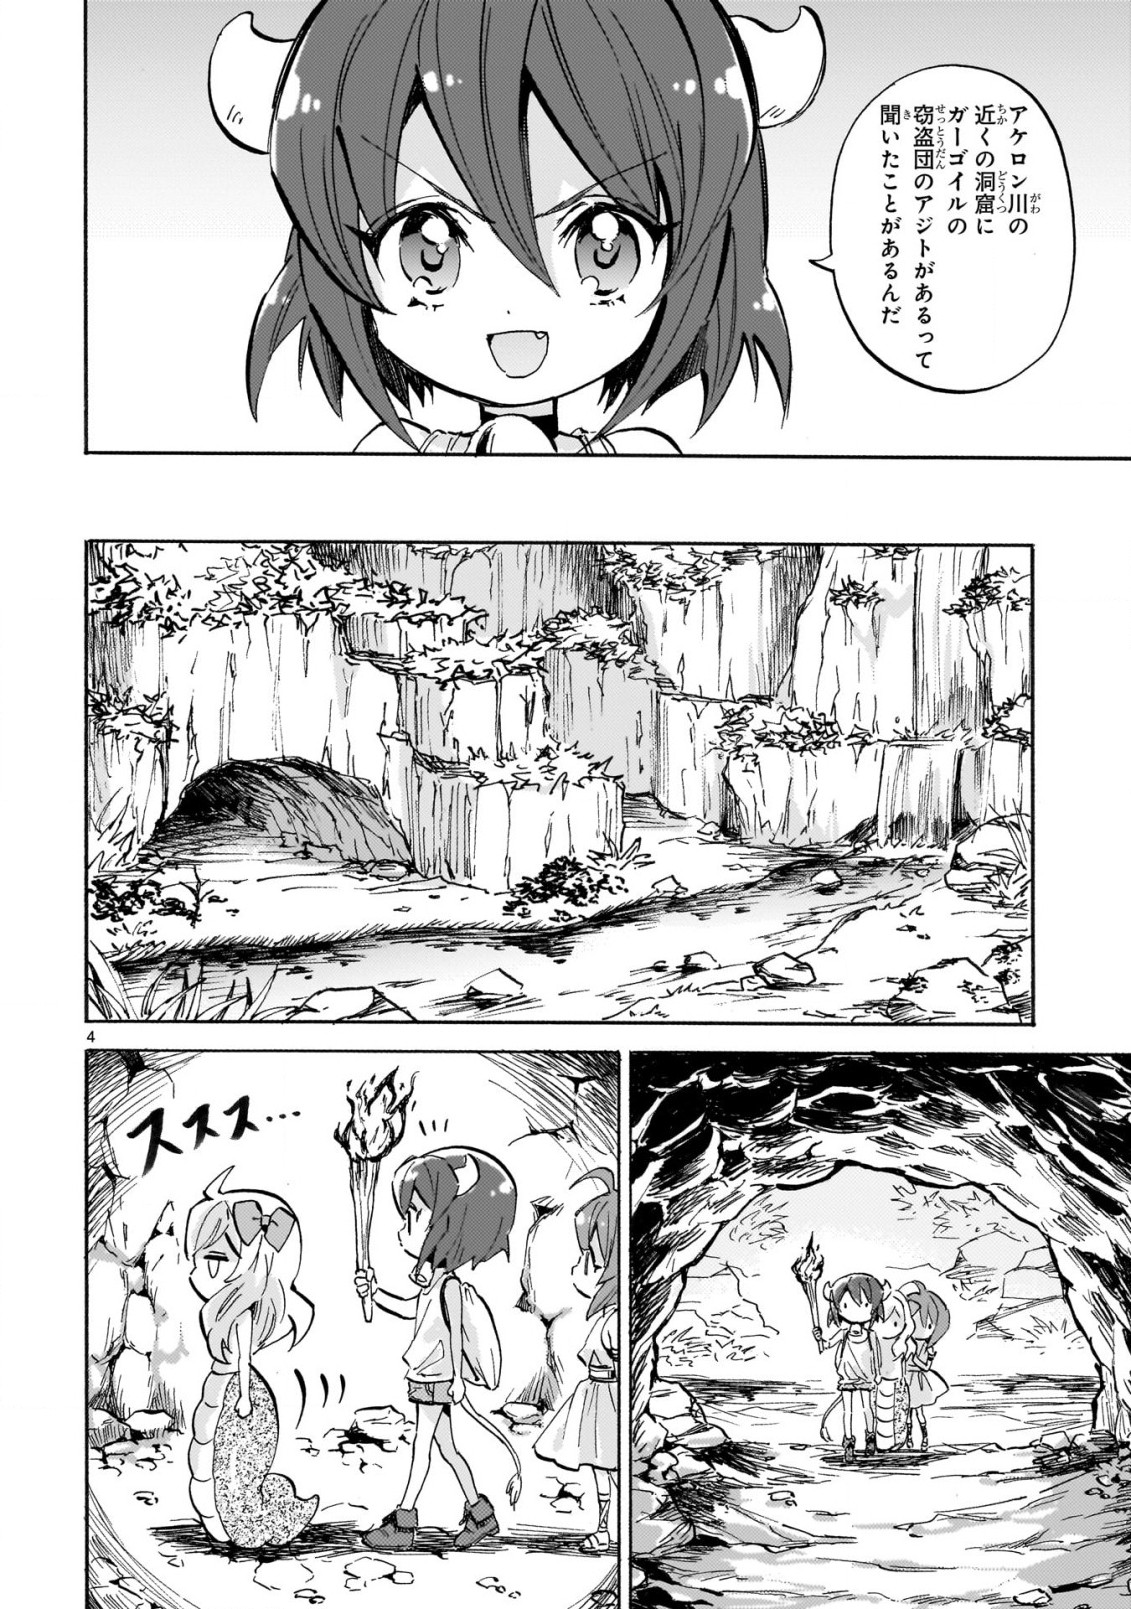 Jashin-chan Dropkick - Chapter 229 - Page 4